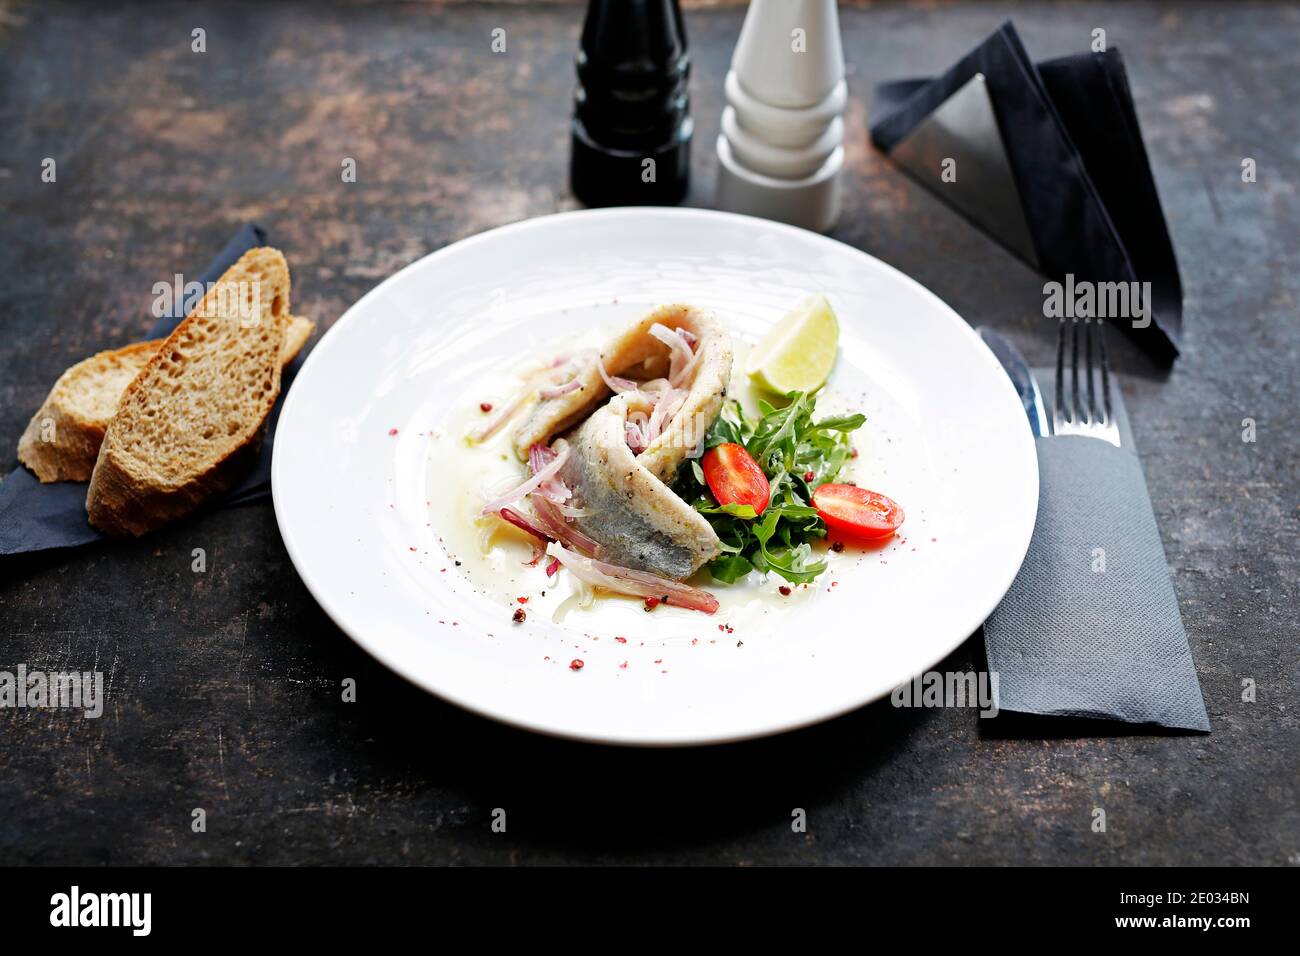 Hareng dans l'huile avec oignon et salade de légumes frais. Hors-d'œuvre appétissant. Suggestion de servir le plat. Photographie culinaire. Banque D'Images